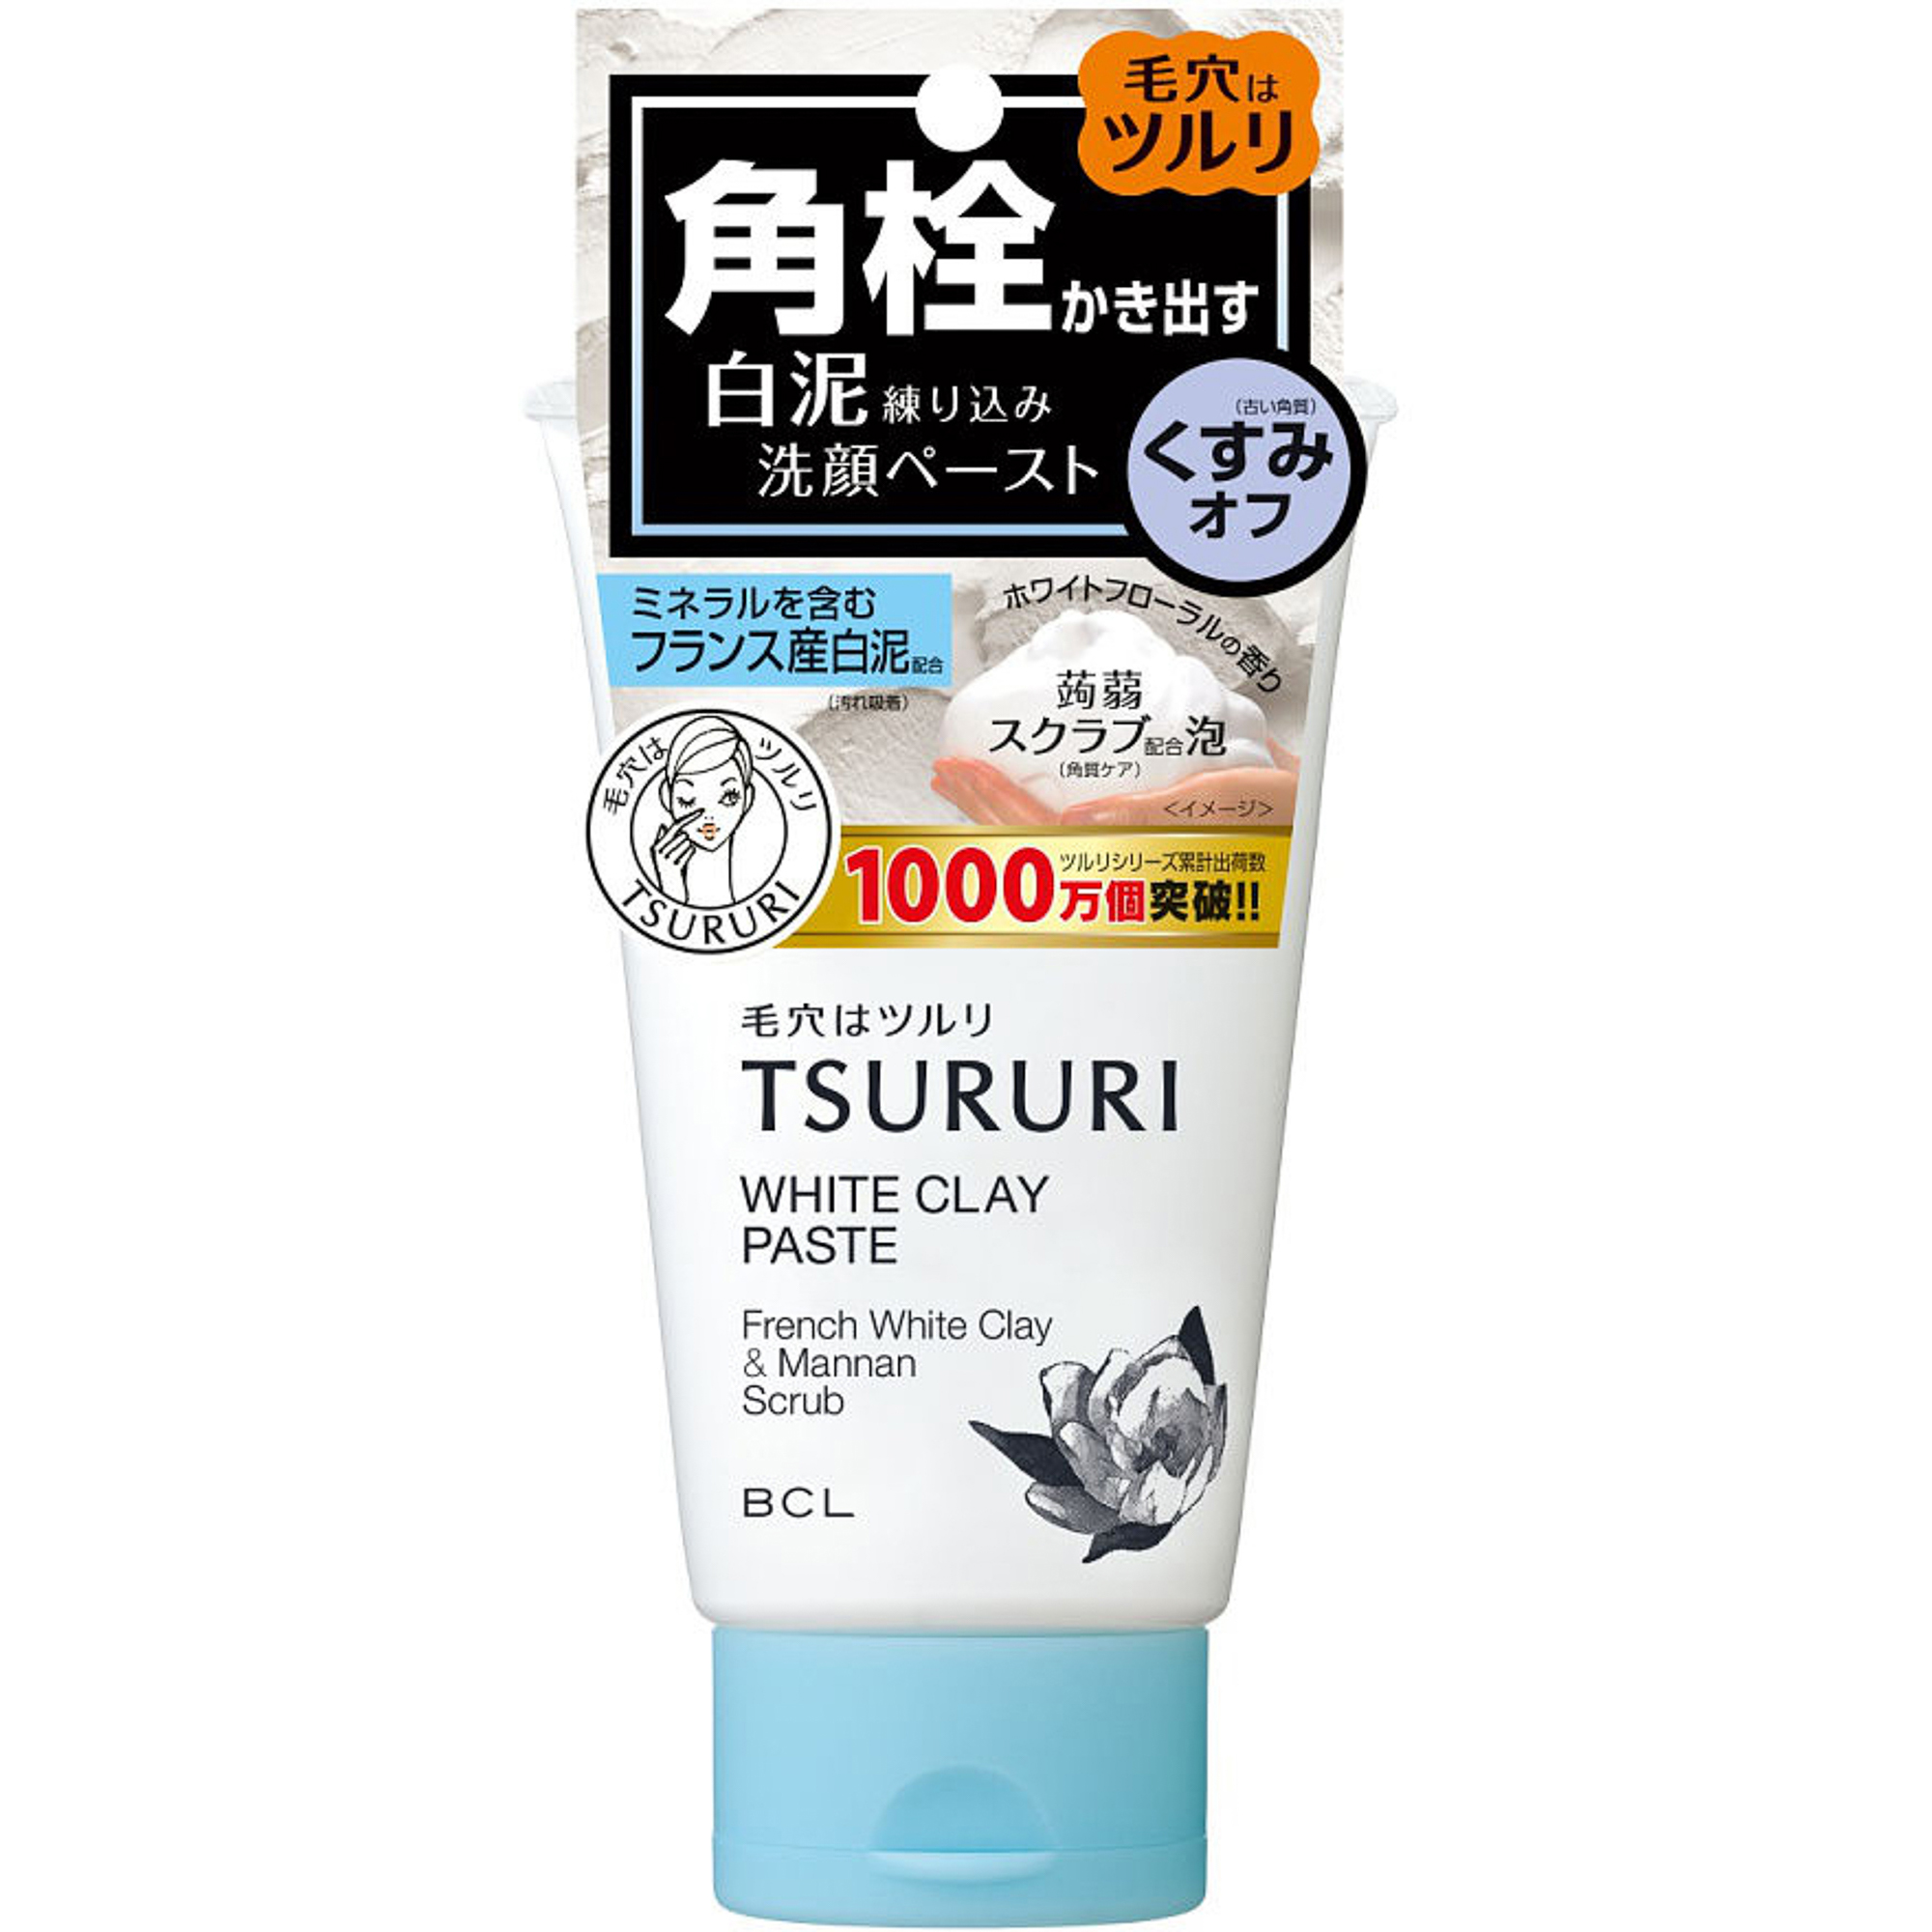 Пенка-скраб Tsururi для глубокого очищения кожи с французской белой глиной и японским маннаном 120 г пилинг для проблемной кожи 50мл